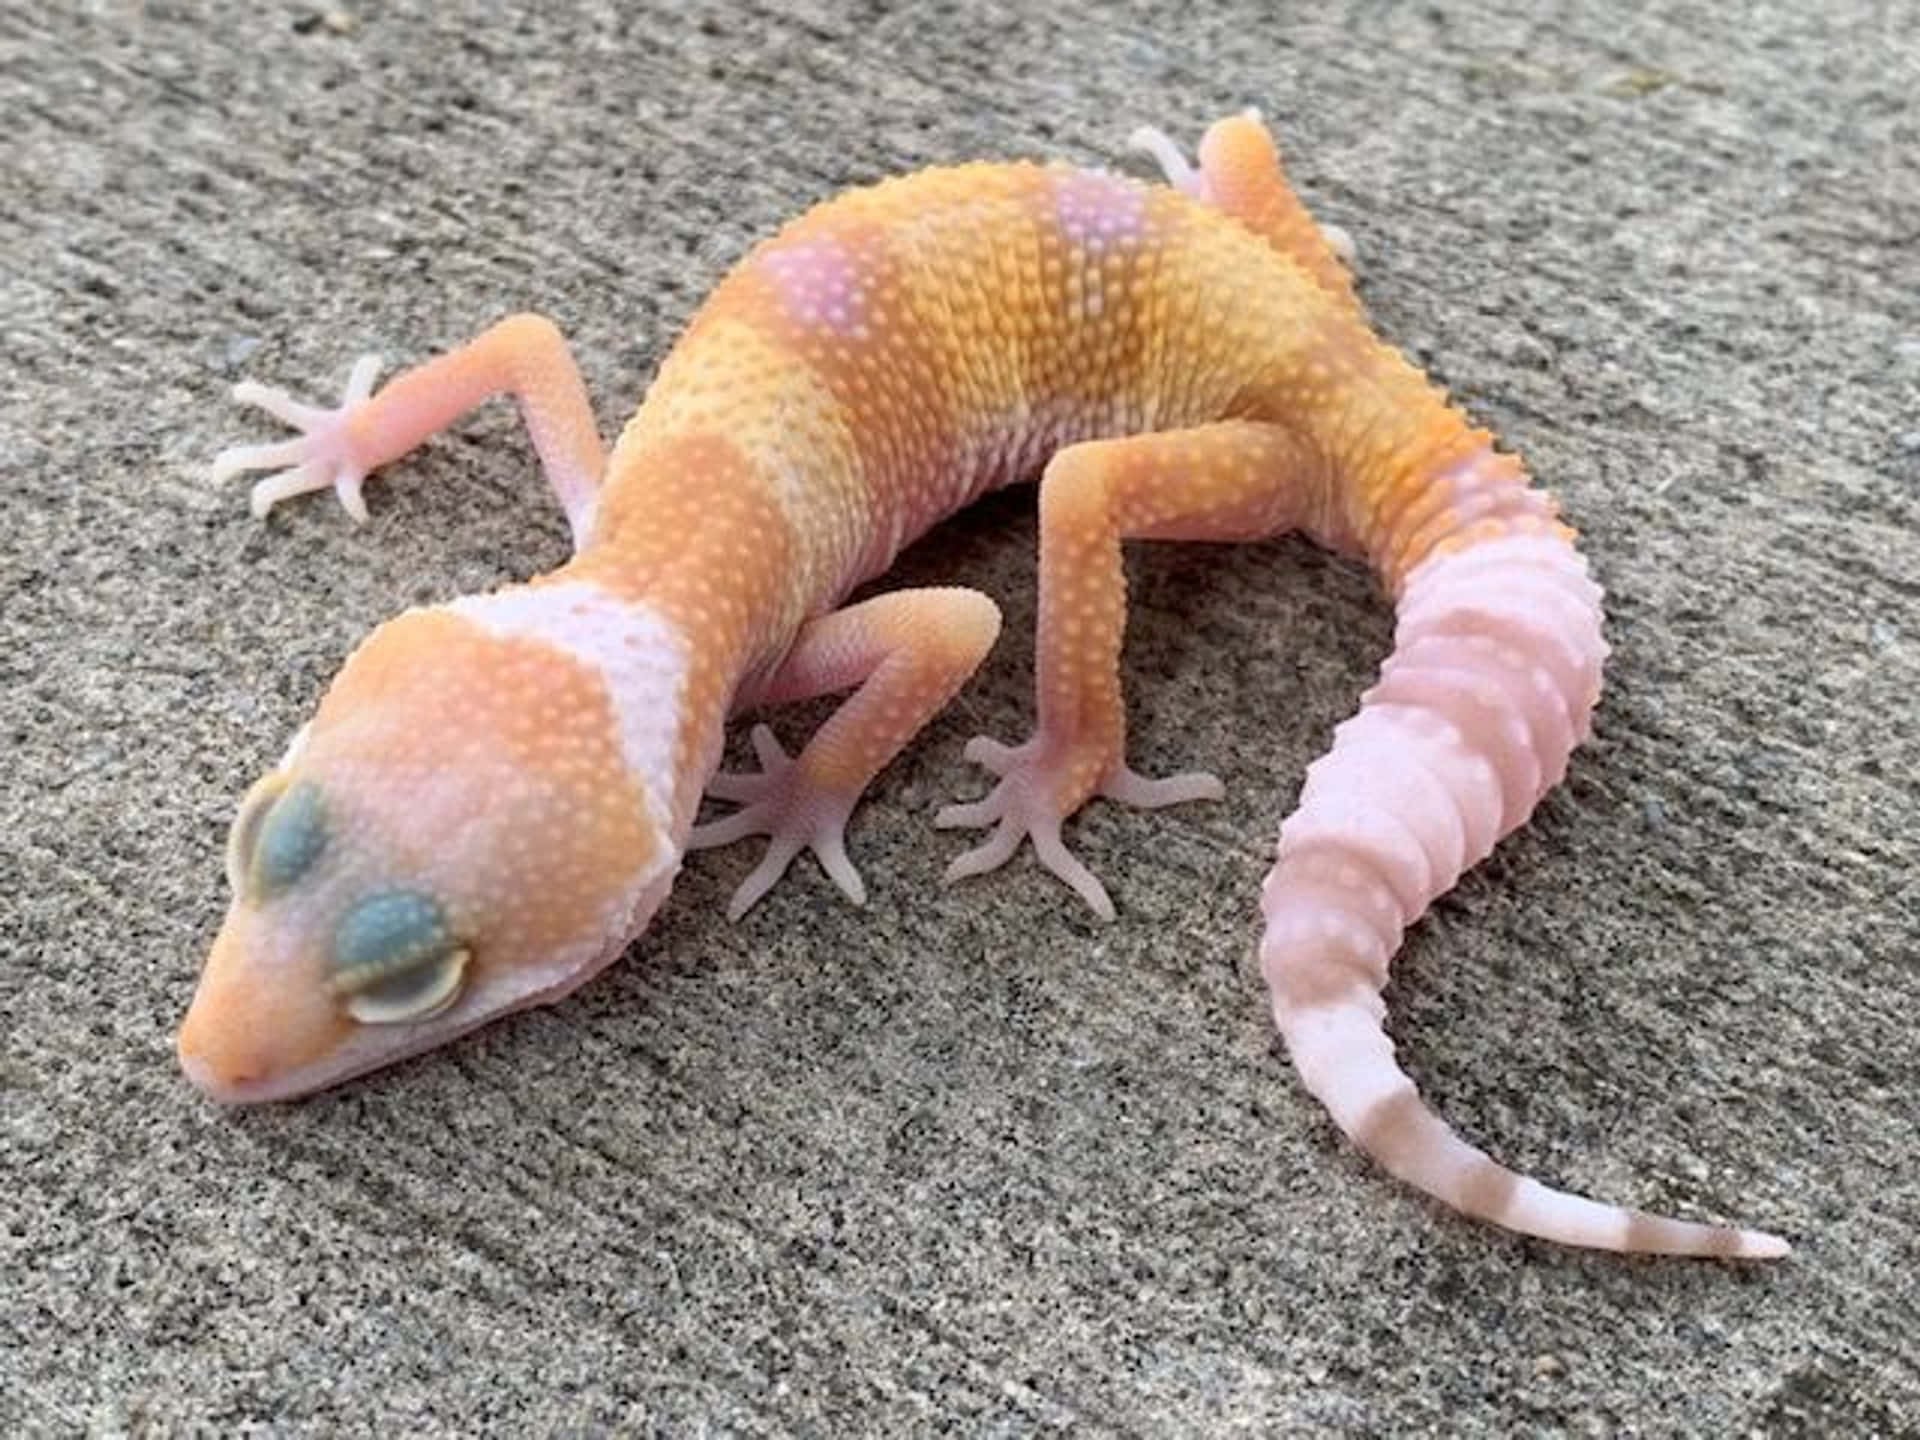 Unoscatto Ravvicinato Di Un Gecko Colorato.